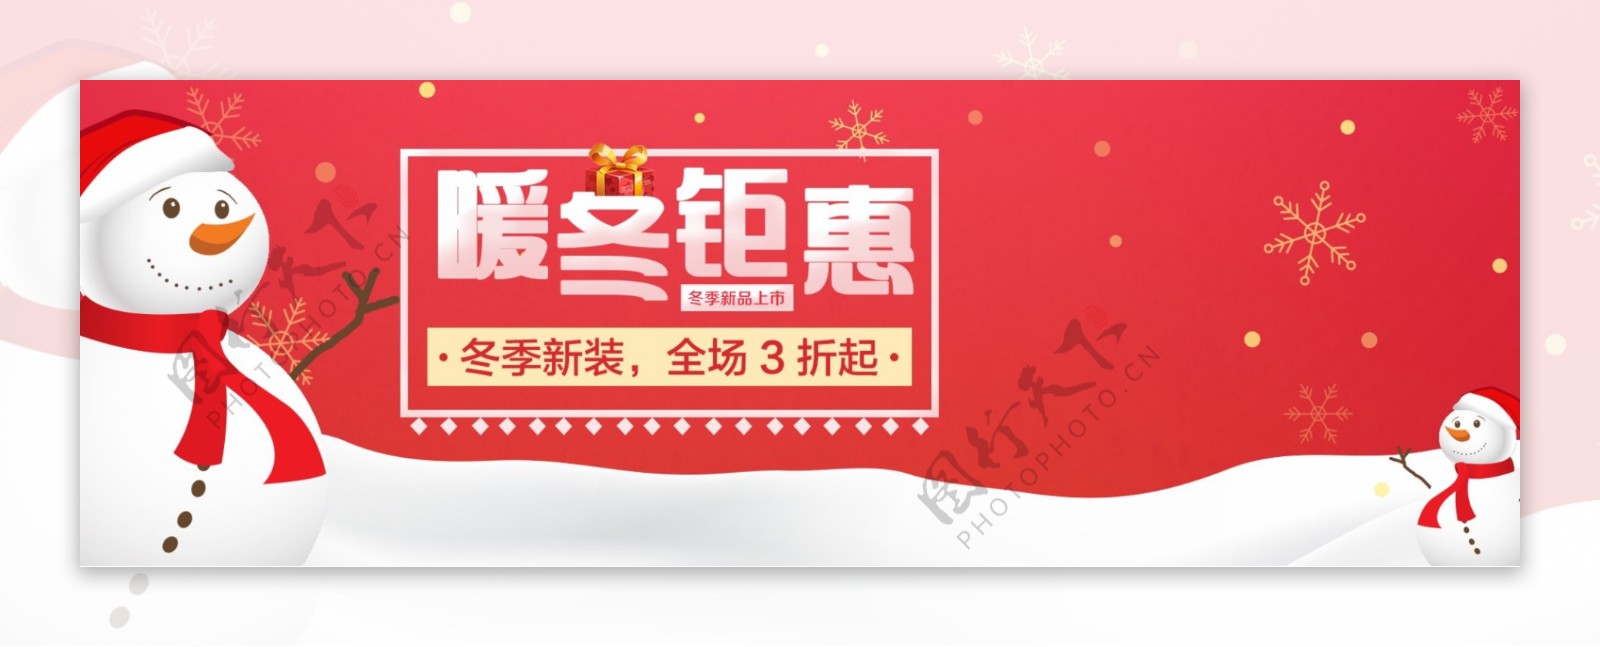 简约淘宝电商冬季促销活动海报banner